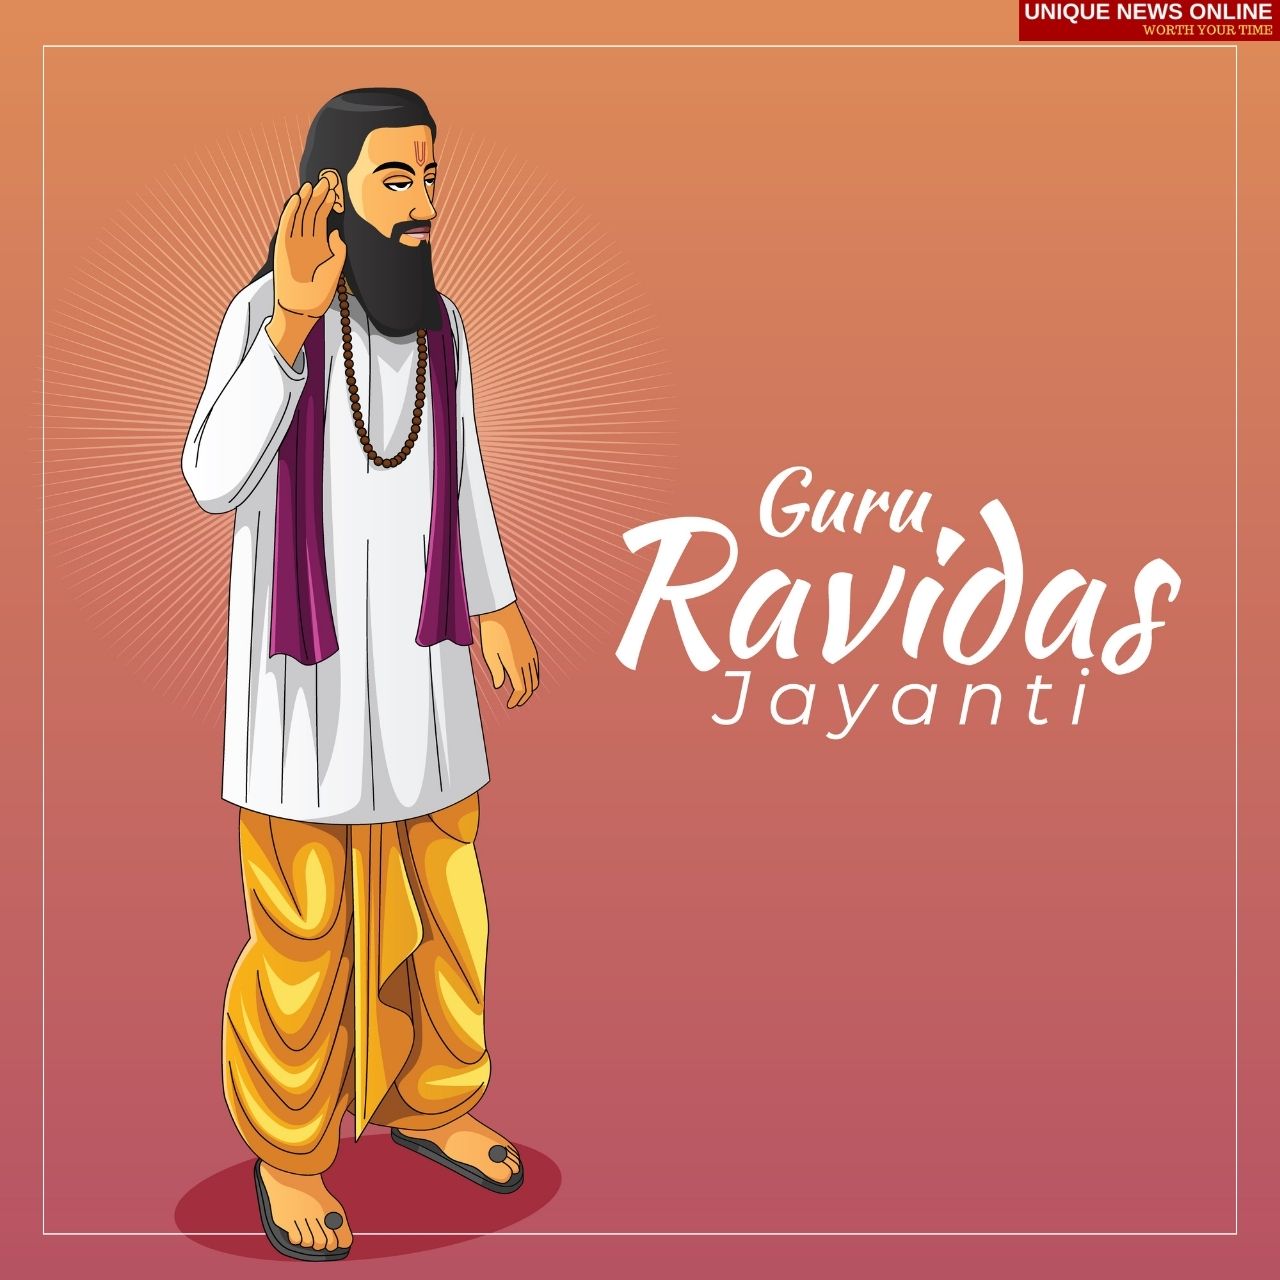 Happy Guru Ravidas Jayanti 2022 رغبات ، تحيات ، صور عالية الدقة ، رسائل ، ورق حائط ، اقتباسات ، Shayari ، وفيديو حالة WhatsApp للمشاركة